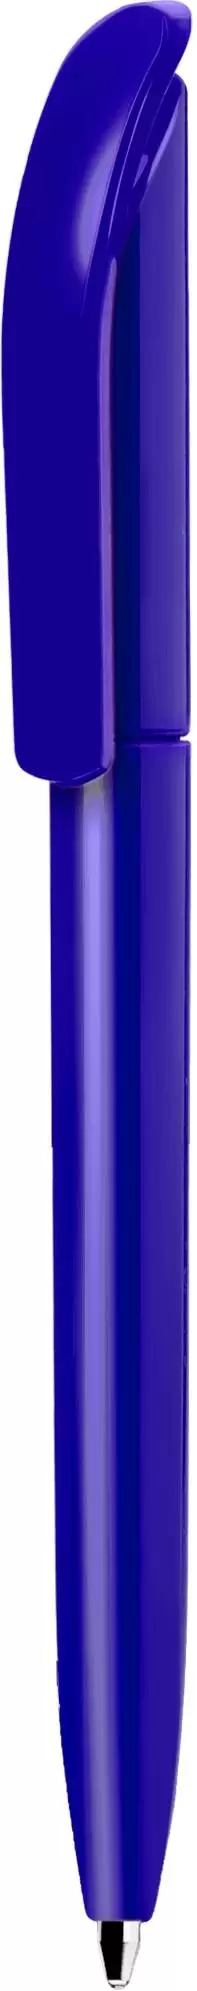 Ручка VIVALDI COLOR Синяя 1336-01